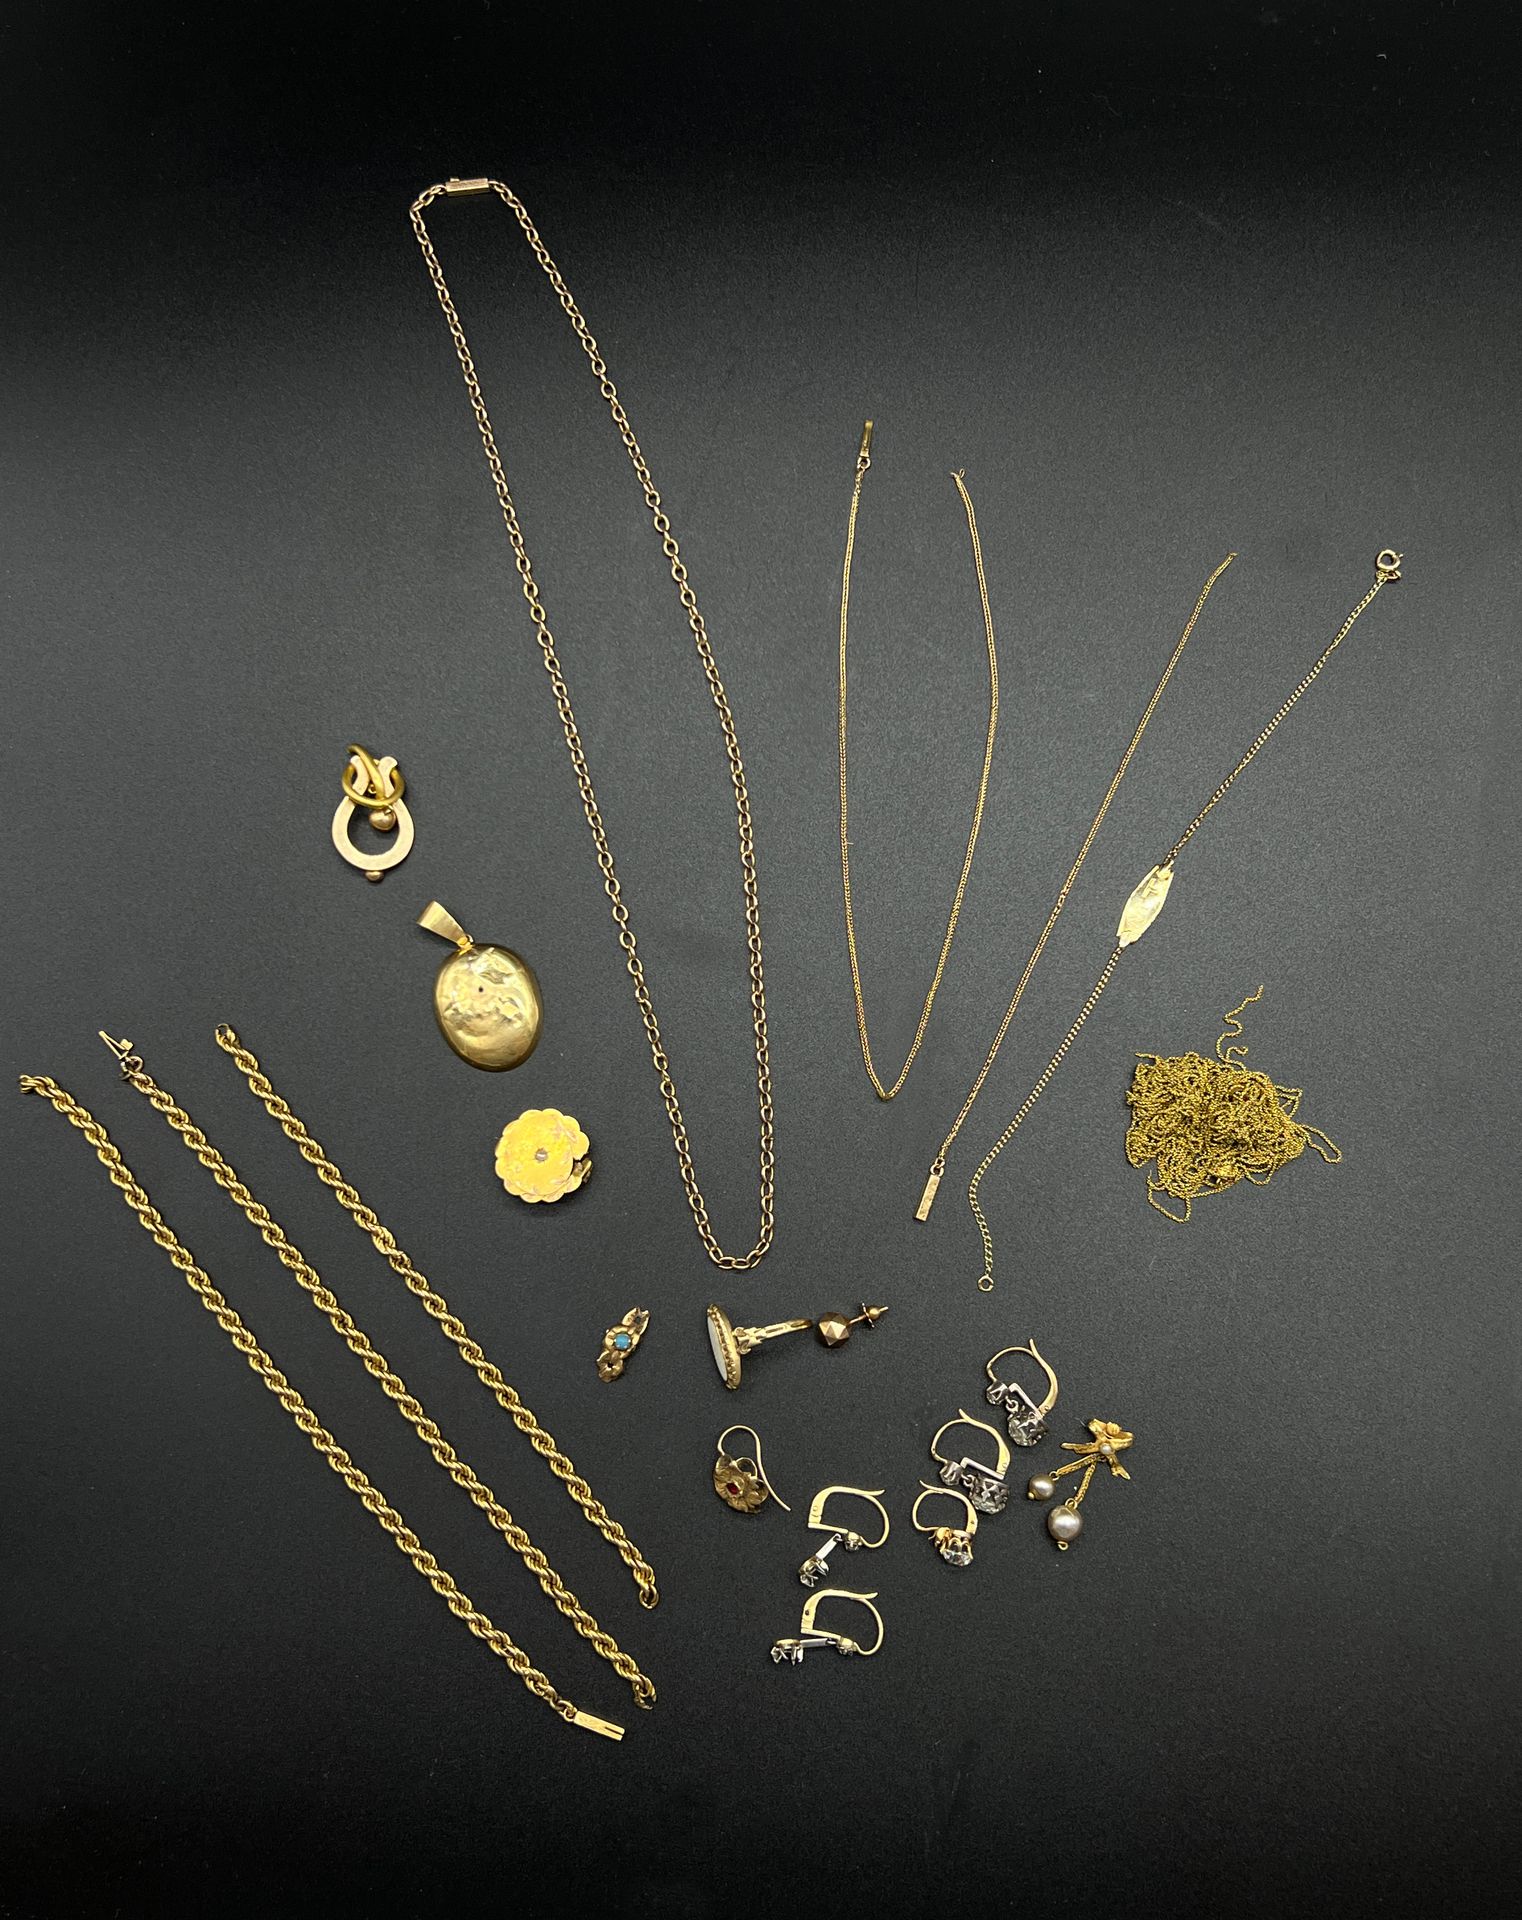 Null Un lot de bijoux en or jaune (750) accidentés.

P. Brut total : 37,4 g.